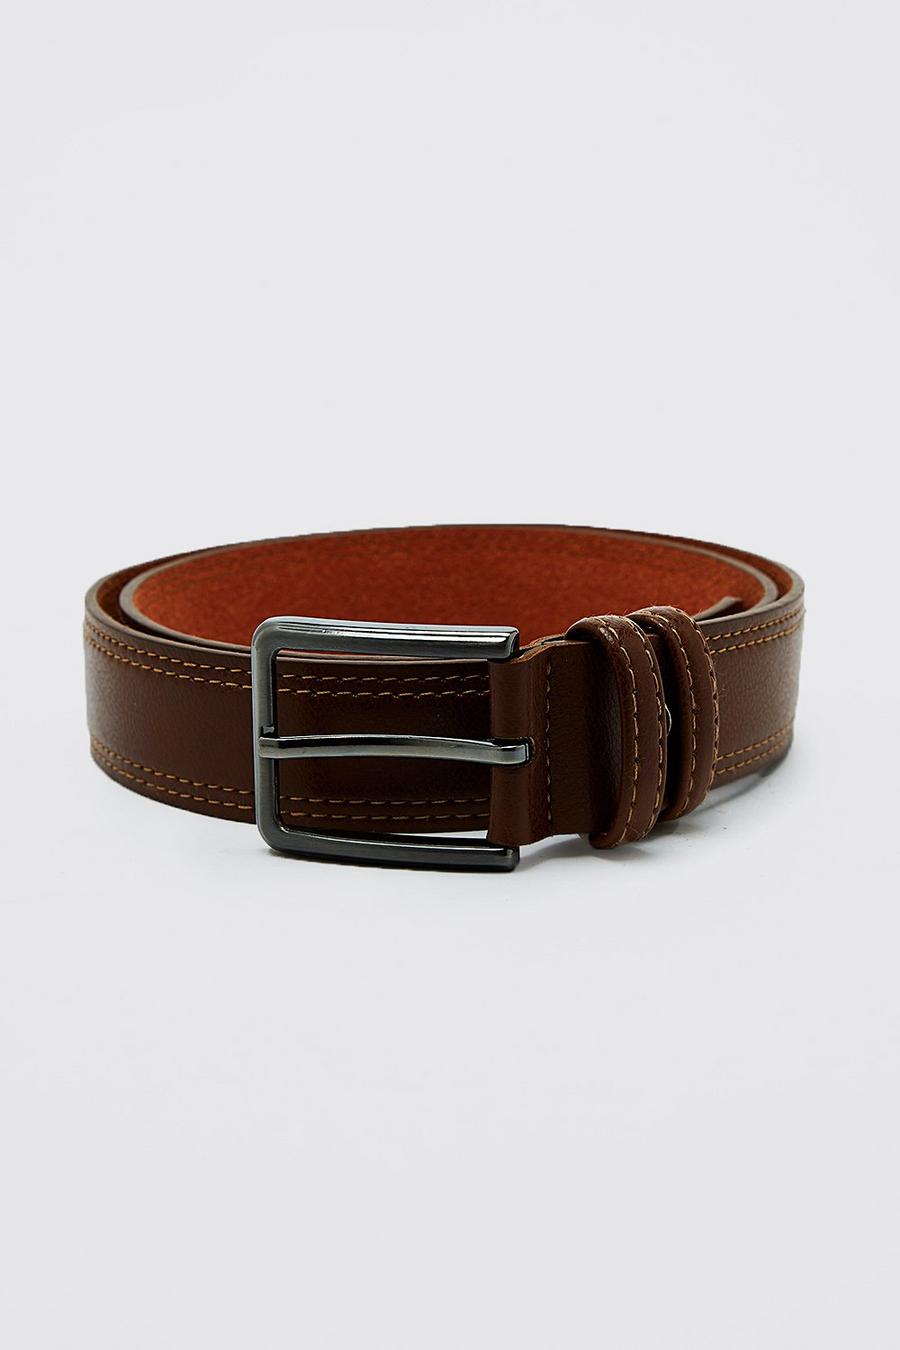 Cinturón de cuero sintético, Brown marrone